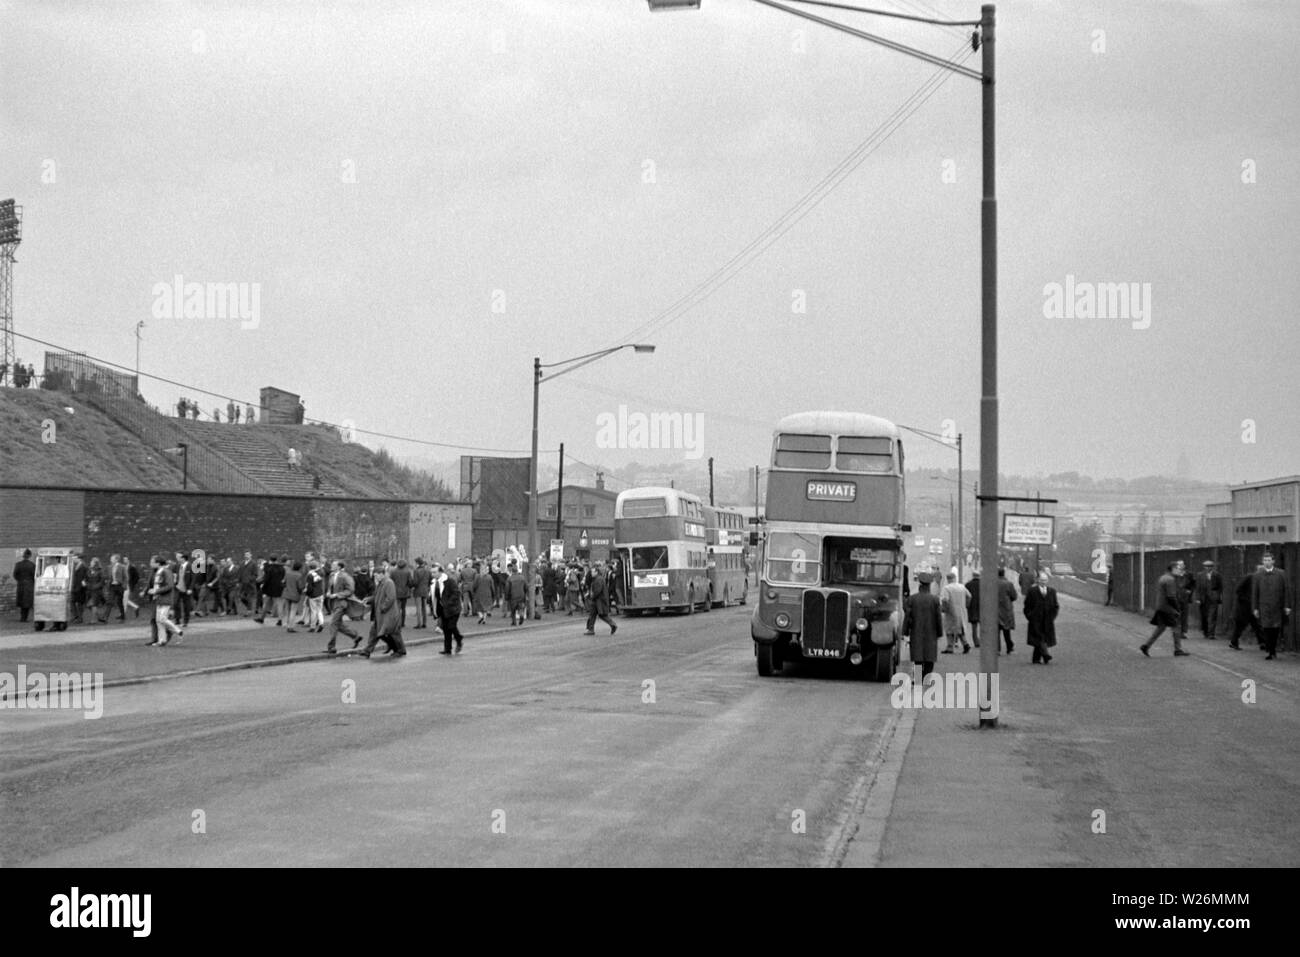 Spieltag bei Leeds United Football Ground. Vermutlich während der 1960er Jahre genommen, das Bild zeigt die home Seite Fans erhalten der Busse ihre Mannschaft in Aktion zu sehen. Der Busbahnhof in das Bild ist eine Waymann Bodied AEC Regent III, die im Jahr 1952 neue gewesen wäre Stockfoto